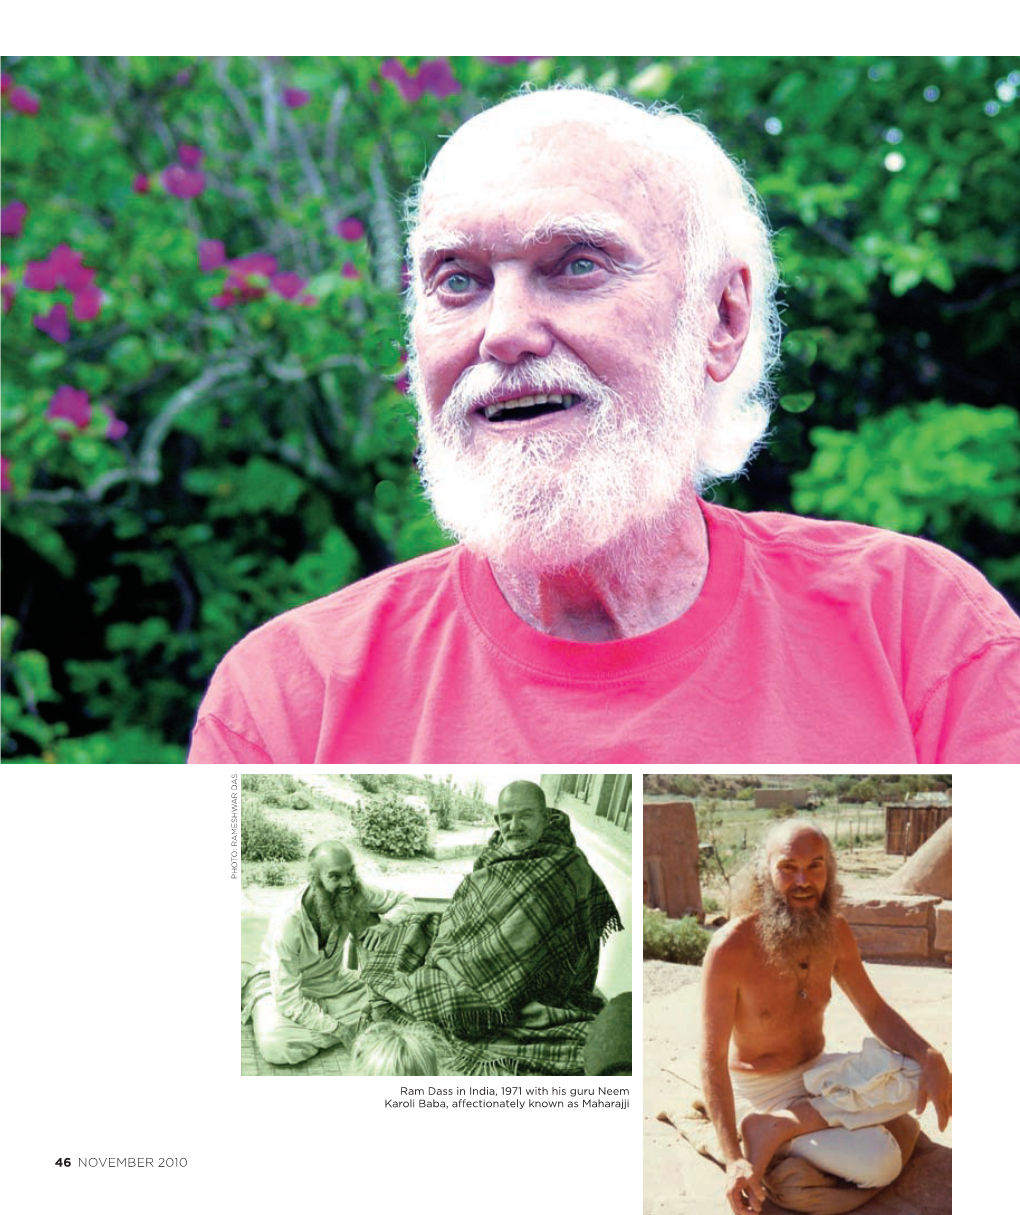 Common Ground Interviews Ram Dass